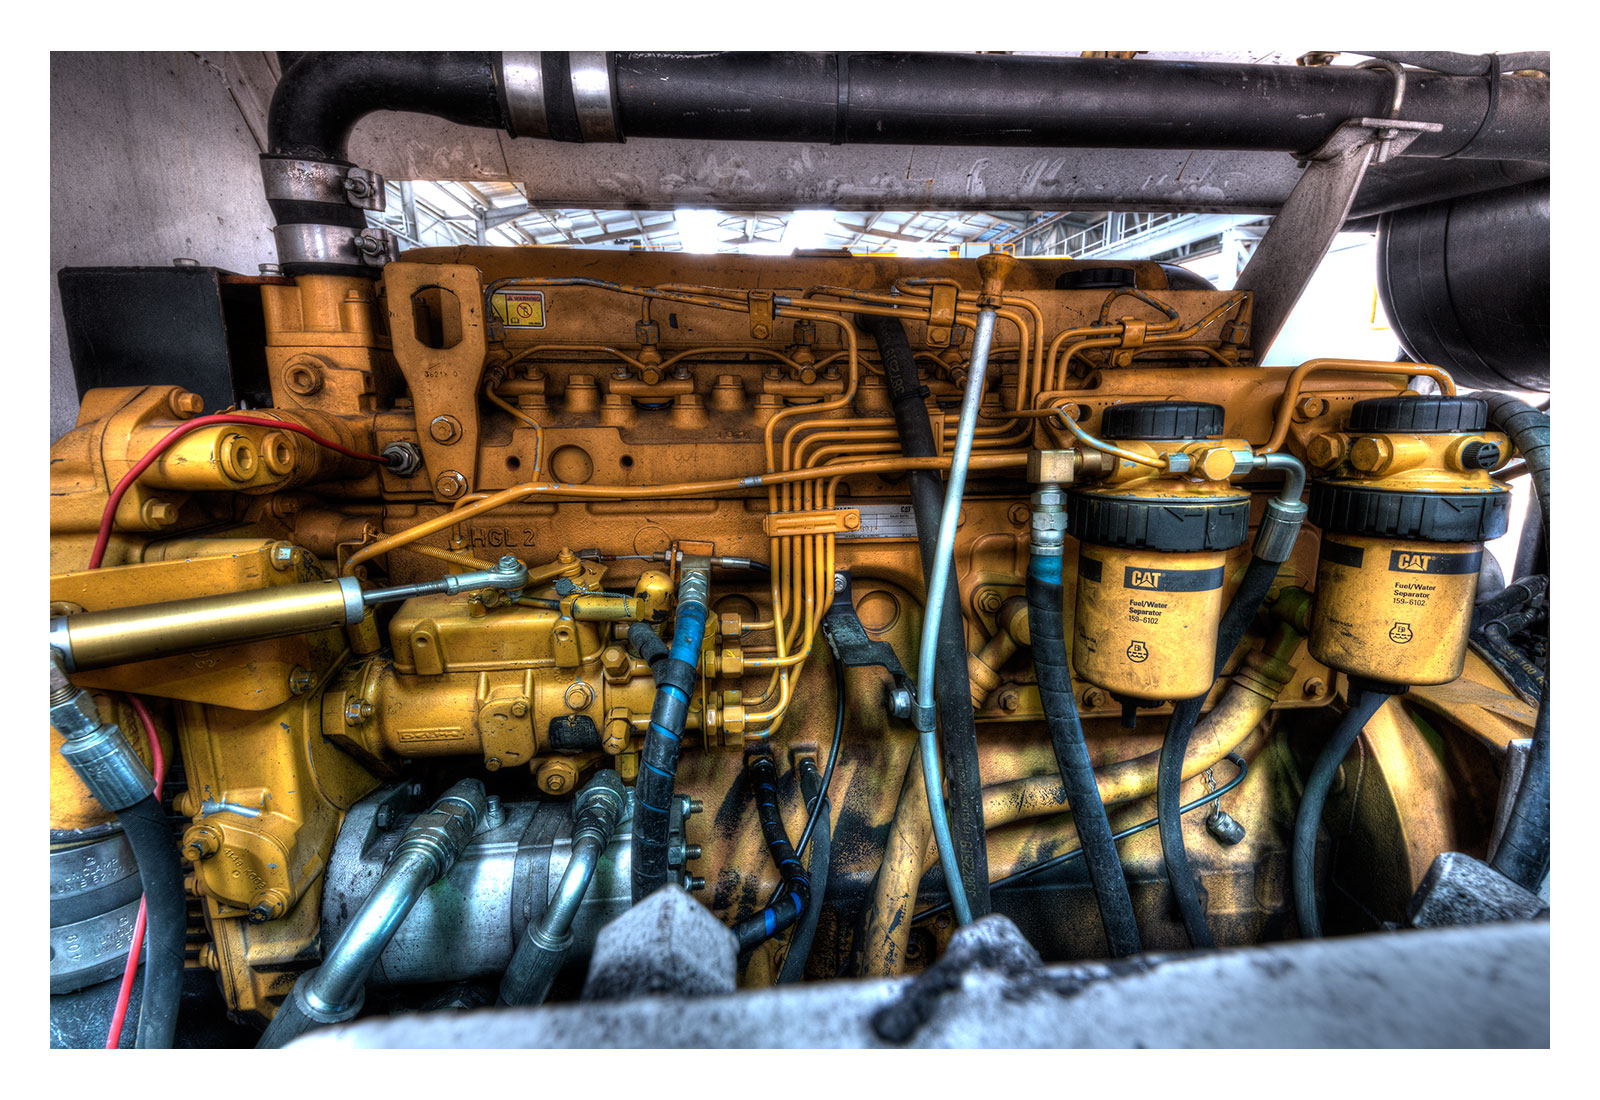 Mining vehicle engine